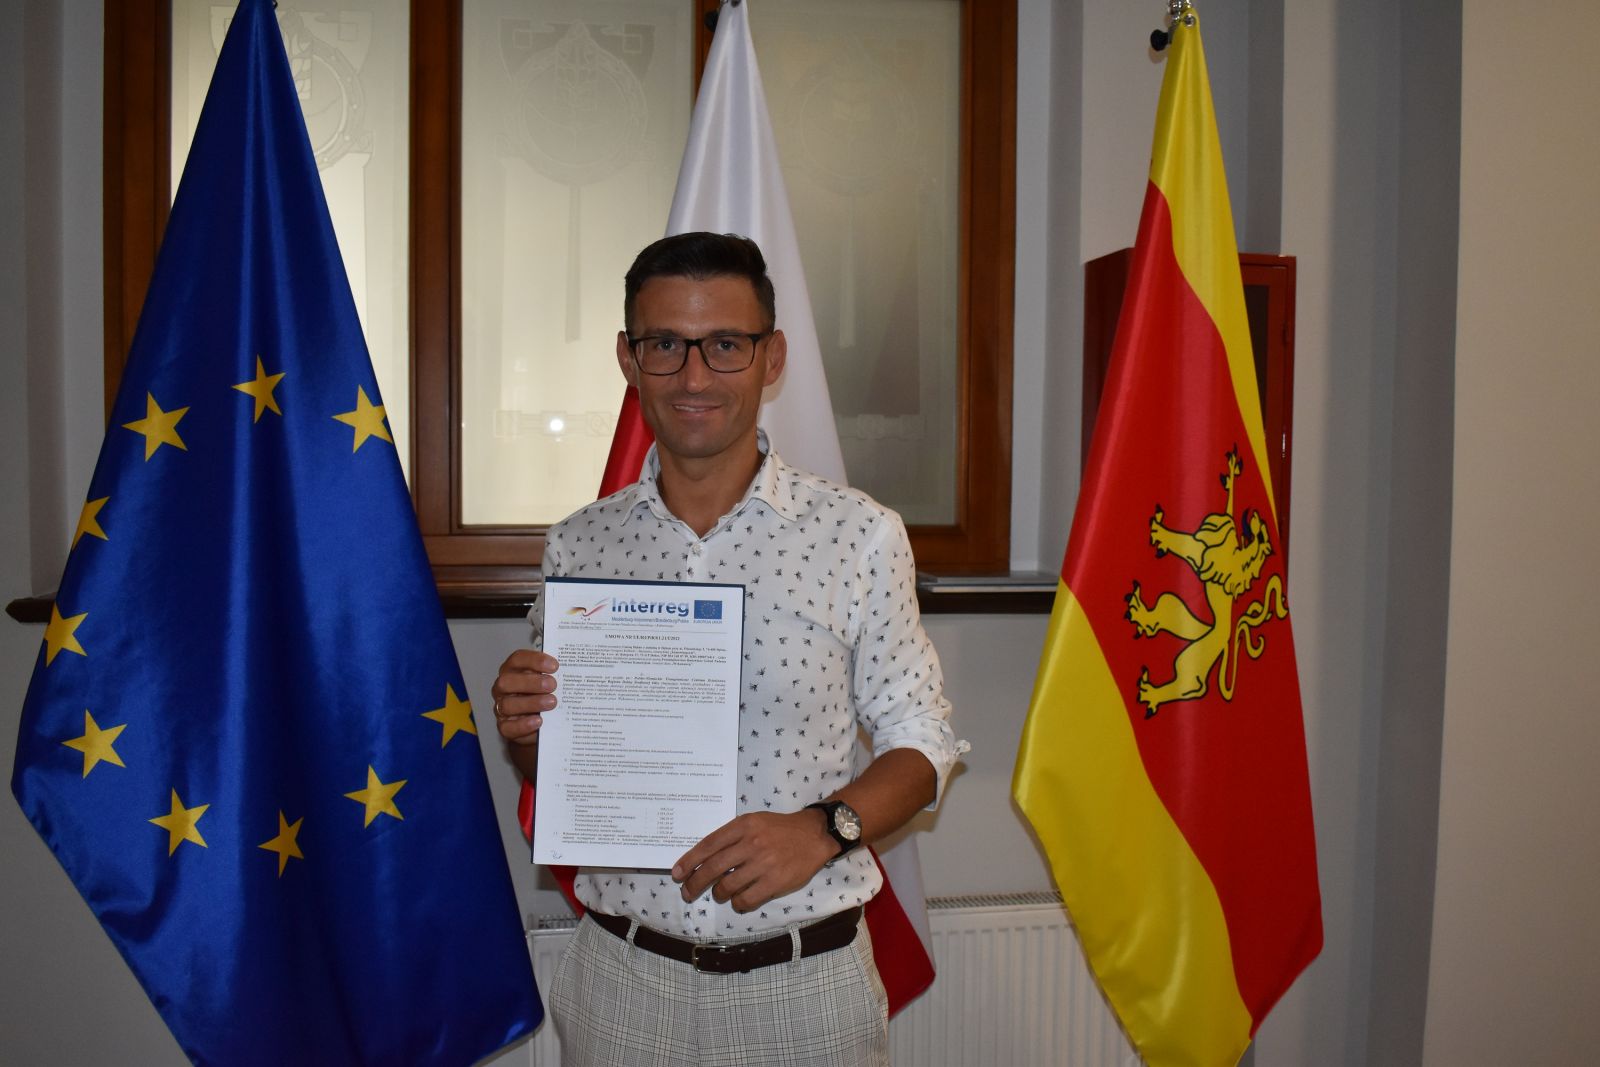 Burmistrz Dębna na tle flag UE i Dębna pokazuje podpisaną umowę 